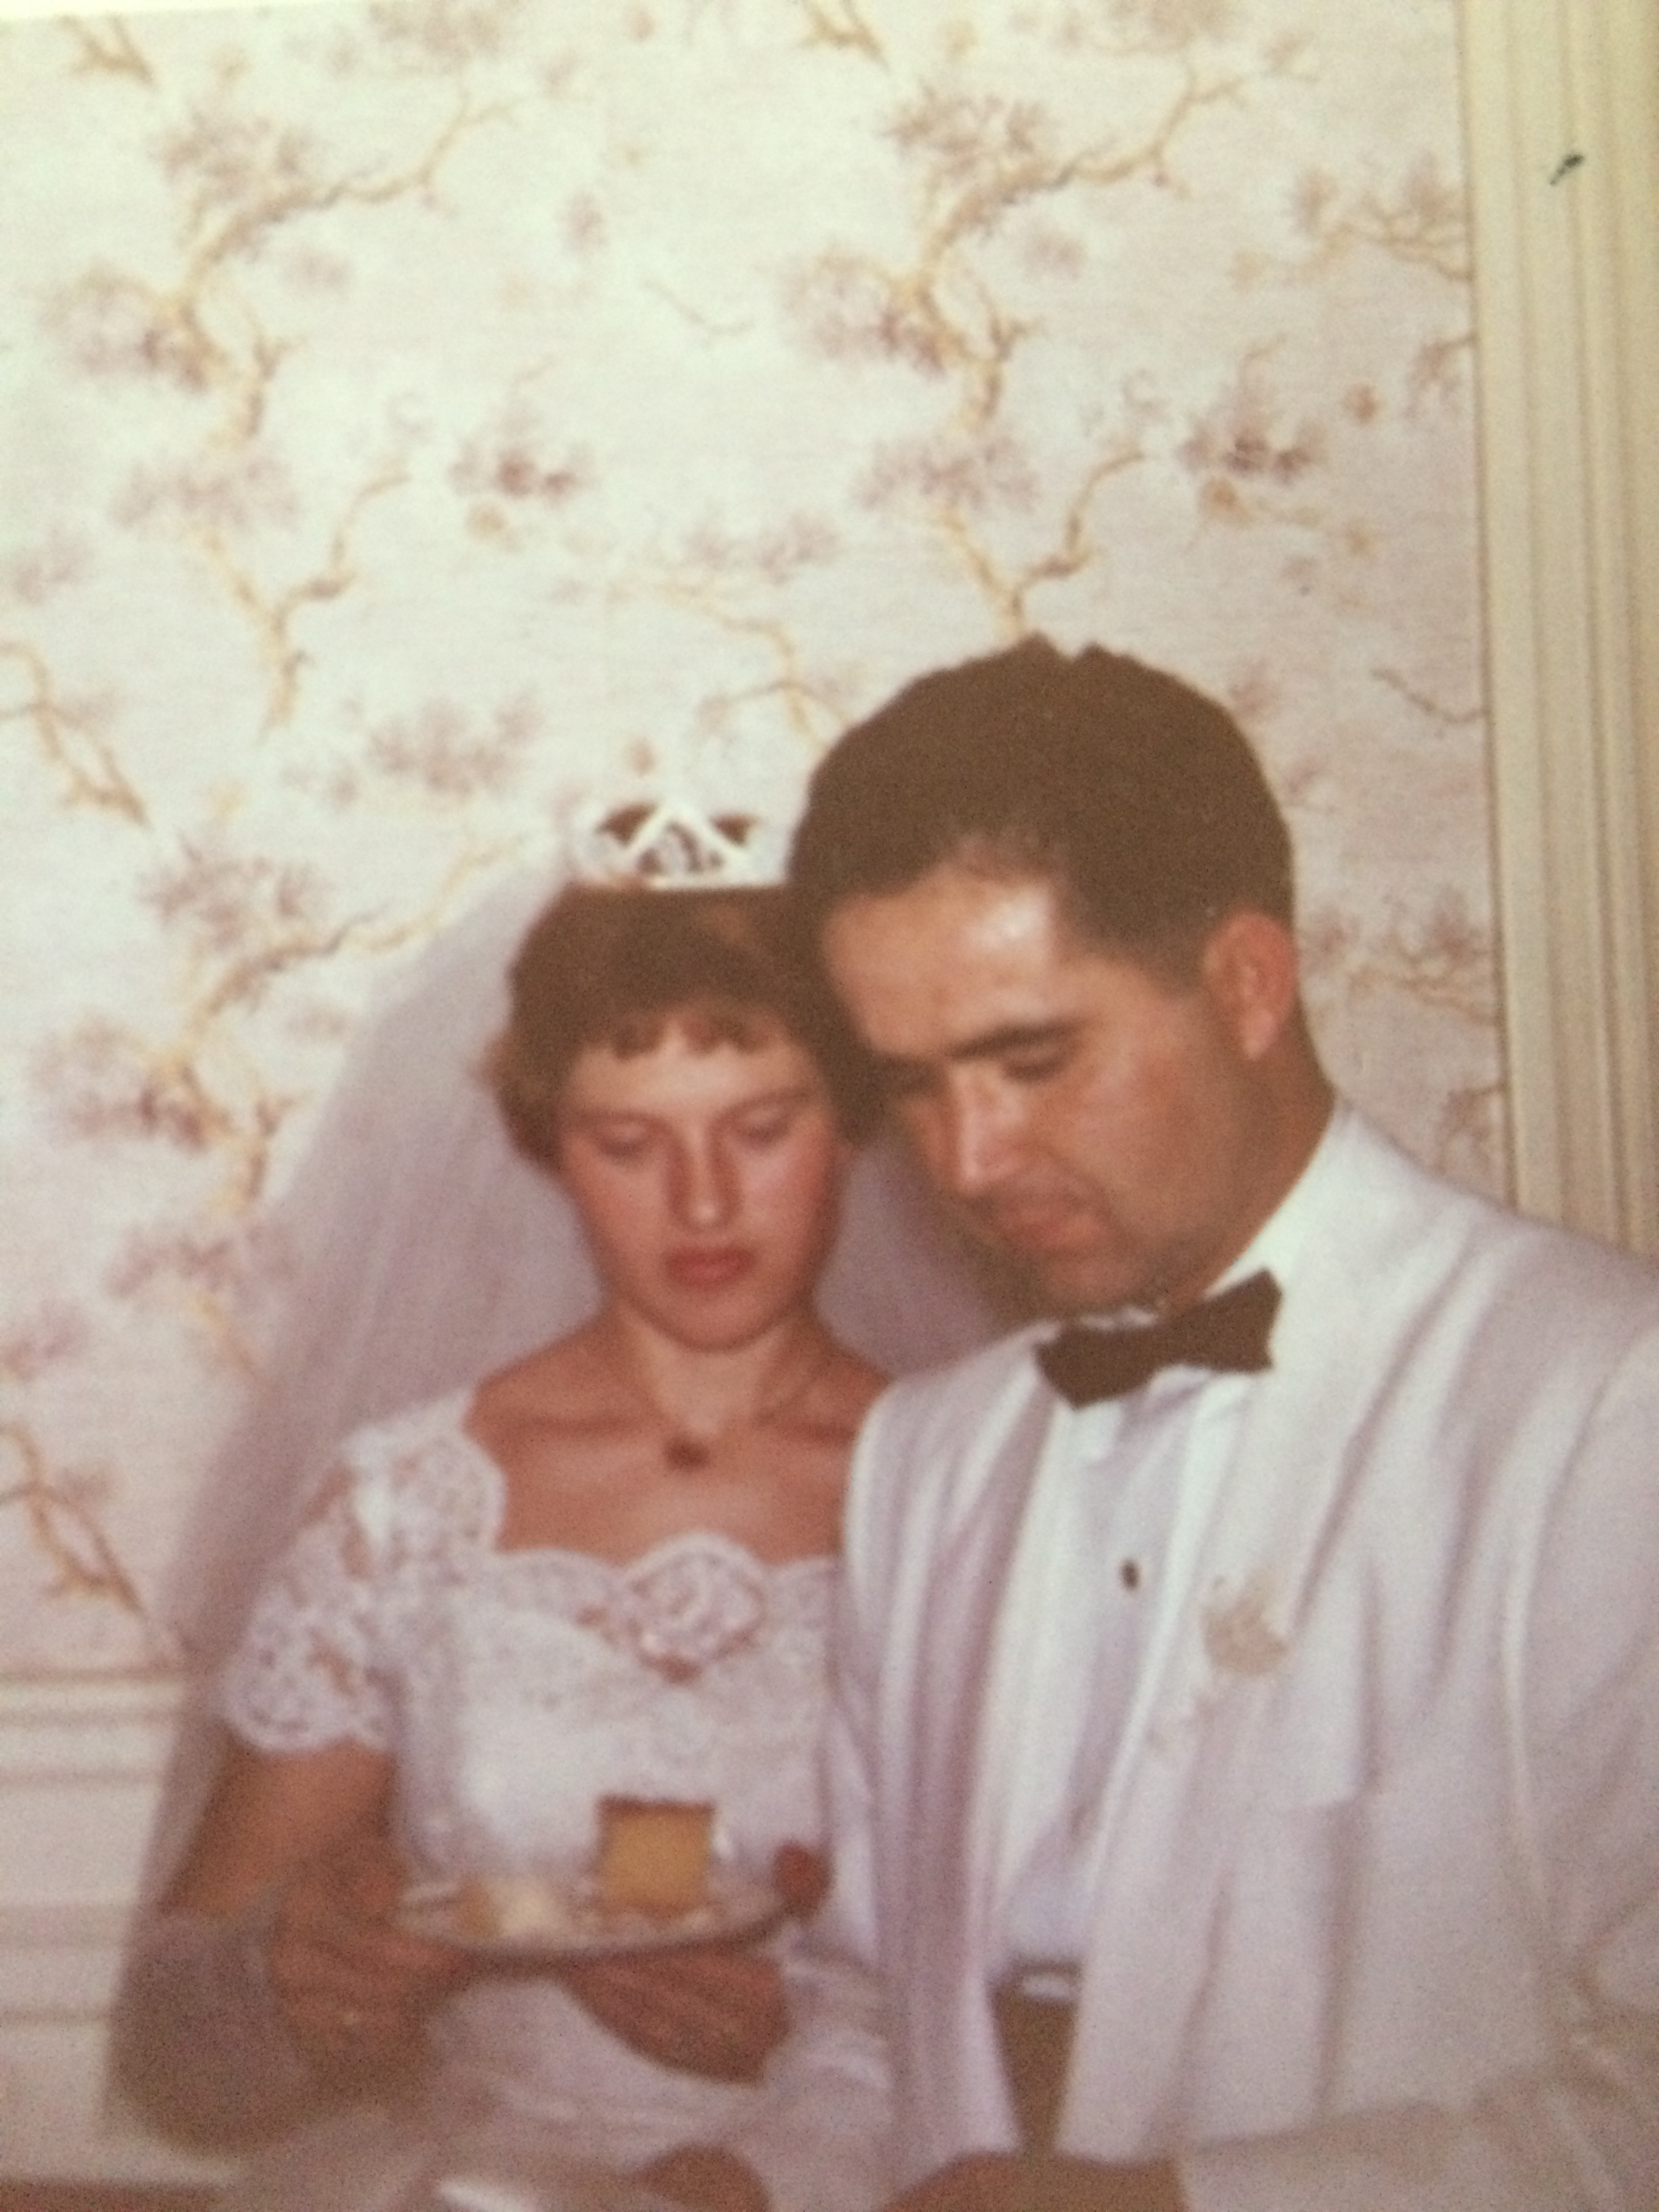 Wedding day July 29 1962 